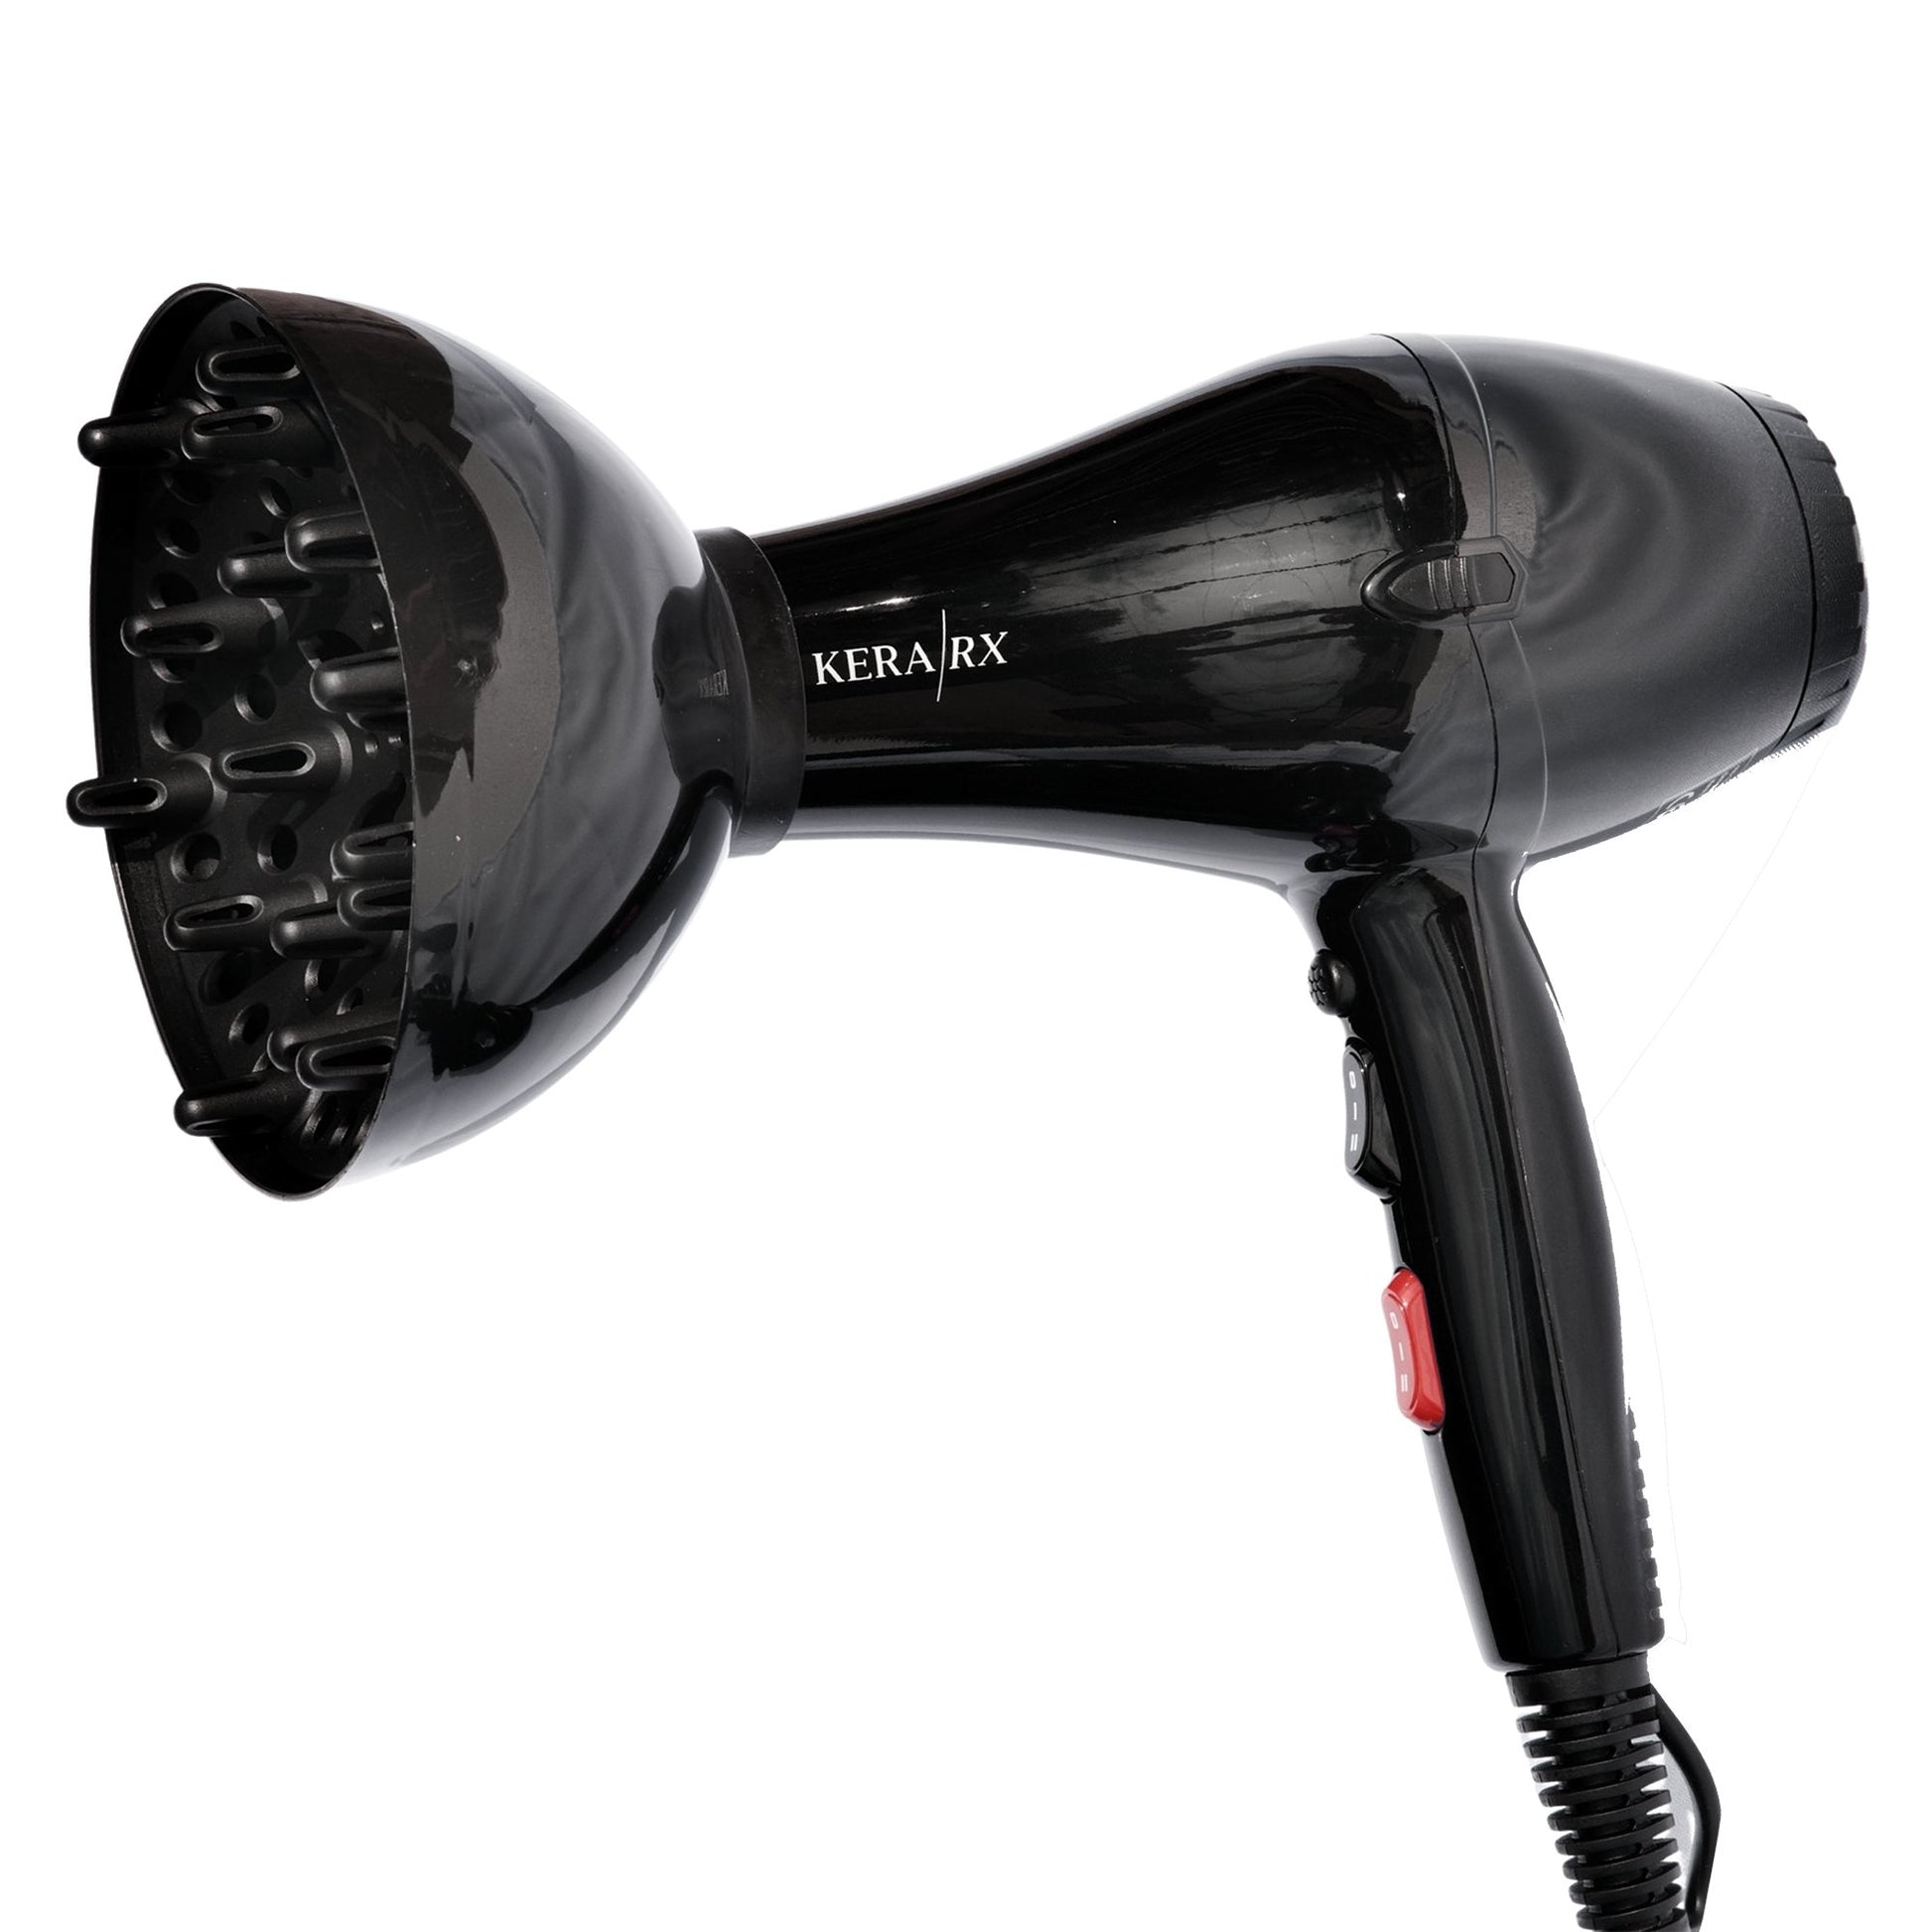 Professional Hair Dryer | KERABLAST 2400 | KERA/RX - SH Salons